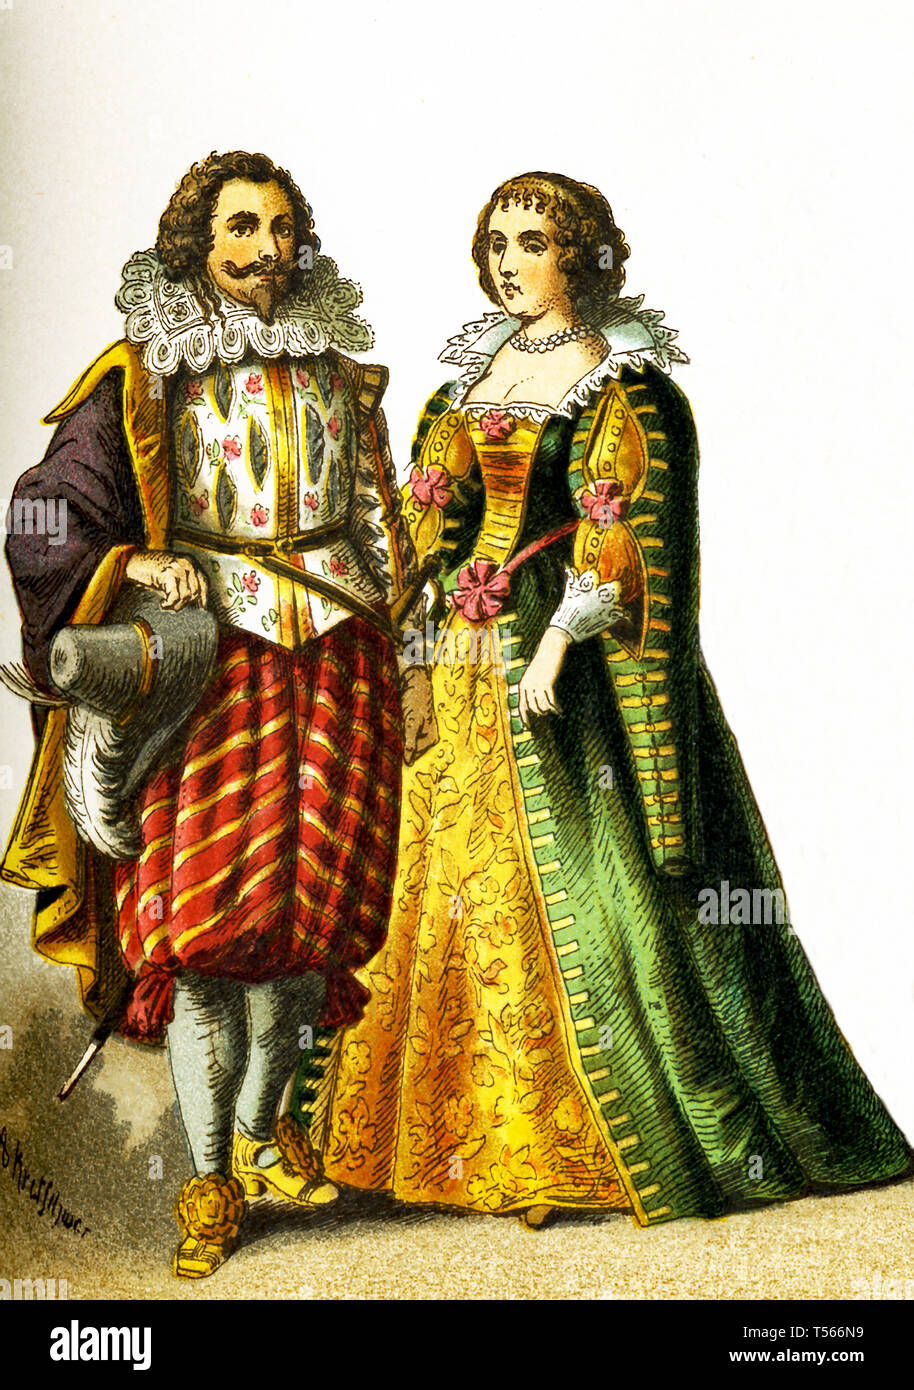 Le figure qui rappresentano il popolo francese nel 1600s. Essi sono, da sinistra a destra: un cavaliere e una donna di rango. Questa illustrazione risale al 1882. Foto Stock